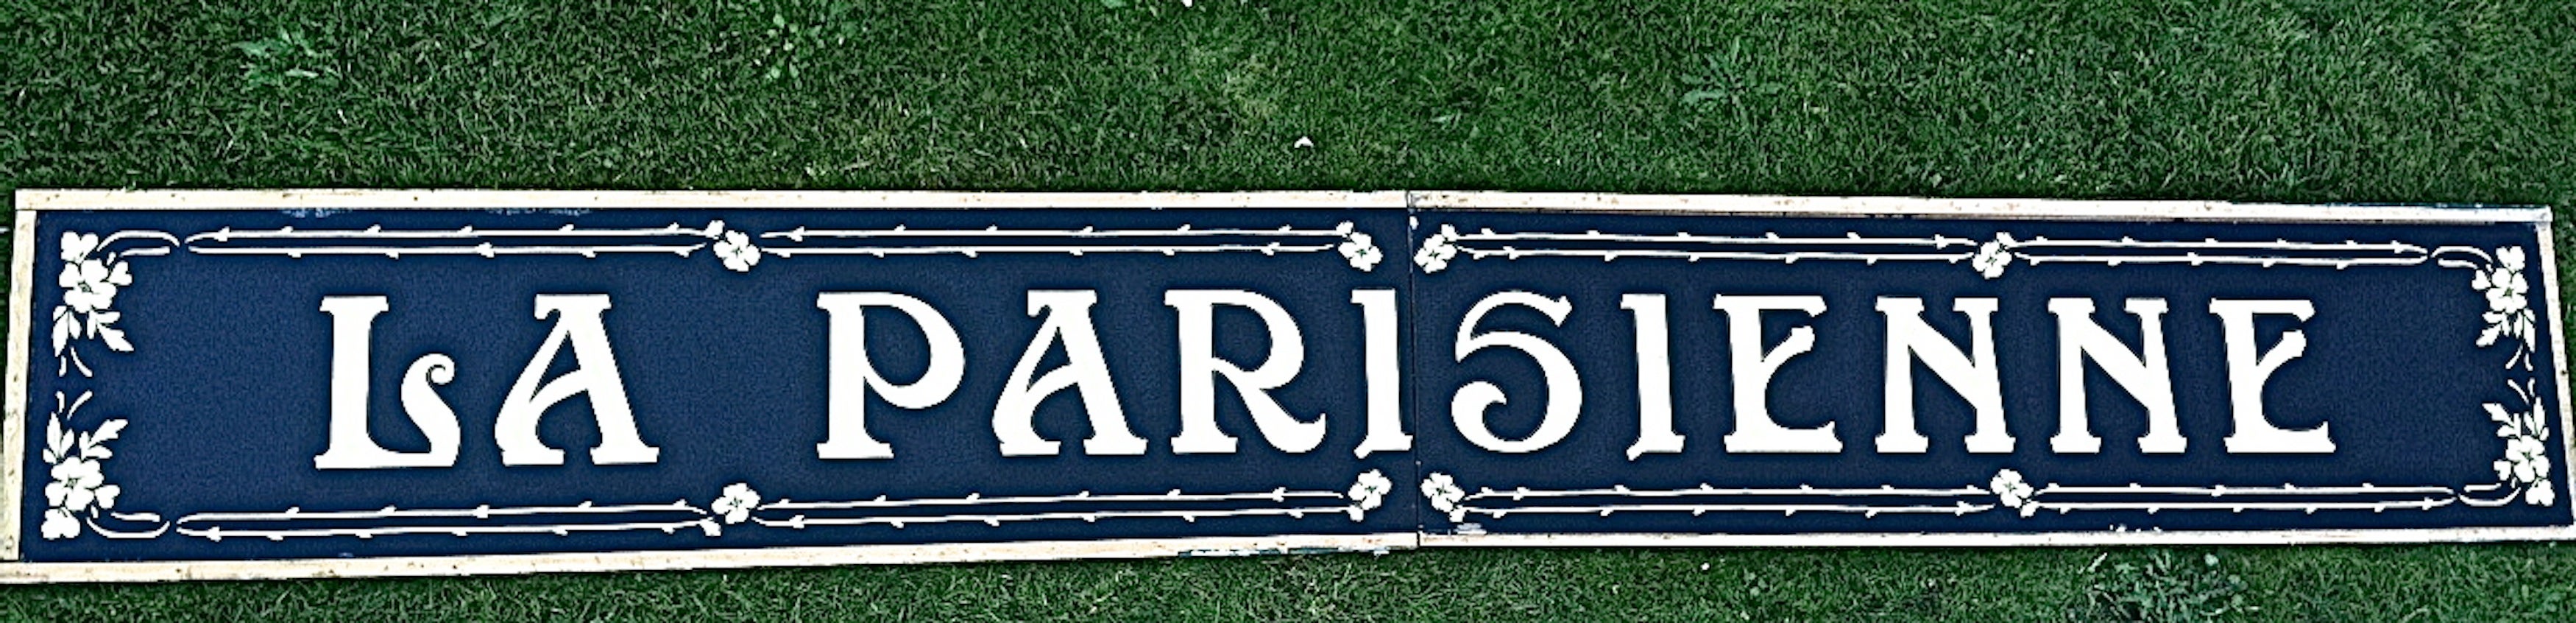 Iconic "La Parisienne" Shop Sign For Sale